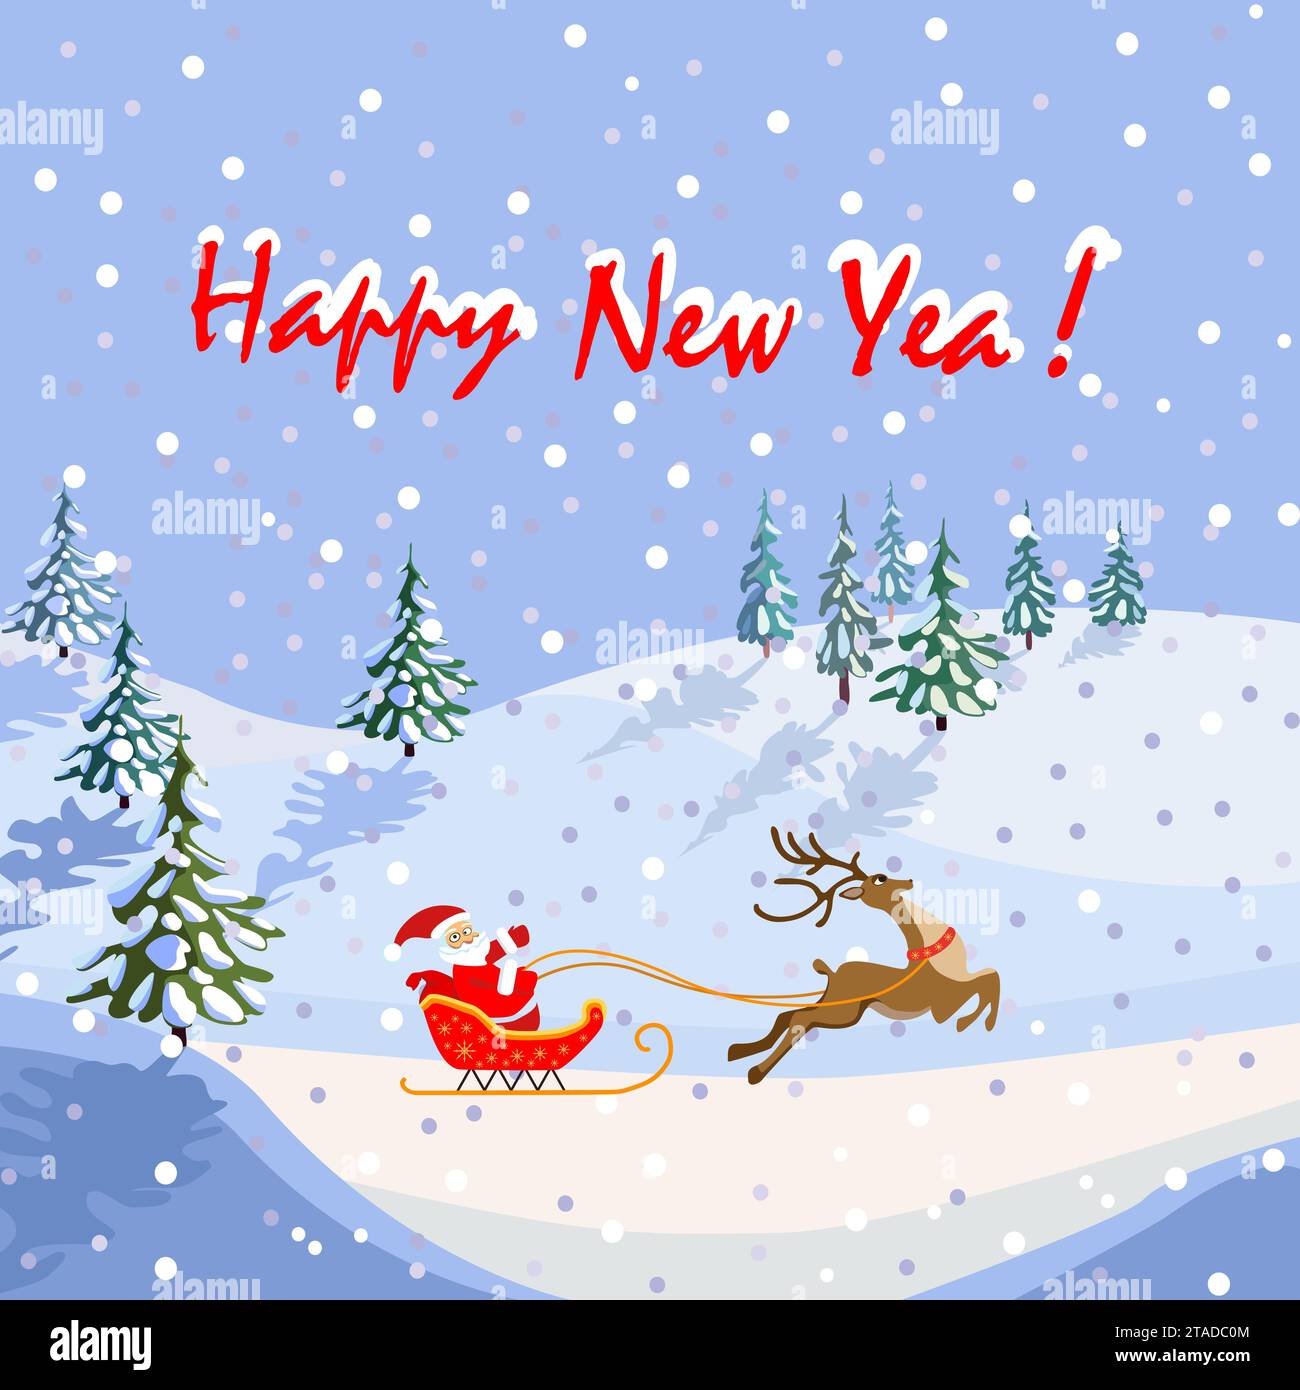 Glückwunschkarte für das neue Jahr, weihnachtsmann auf einem Schlitten mit Rentieren, nicht KI, handgezeichnet Stock Vektor